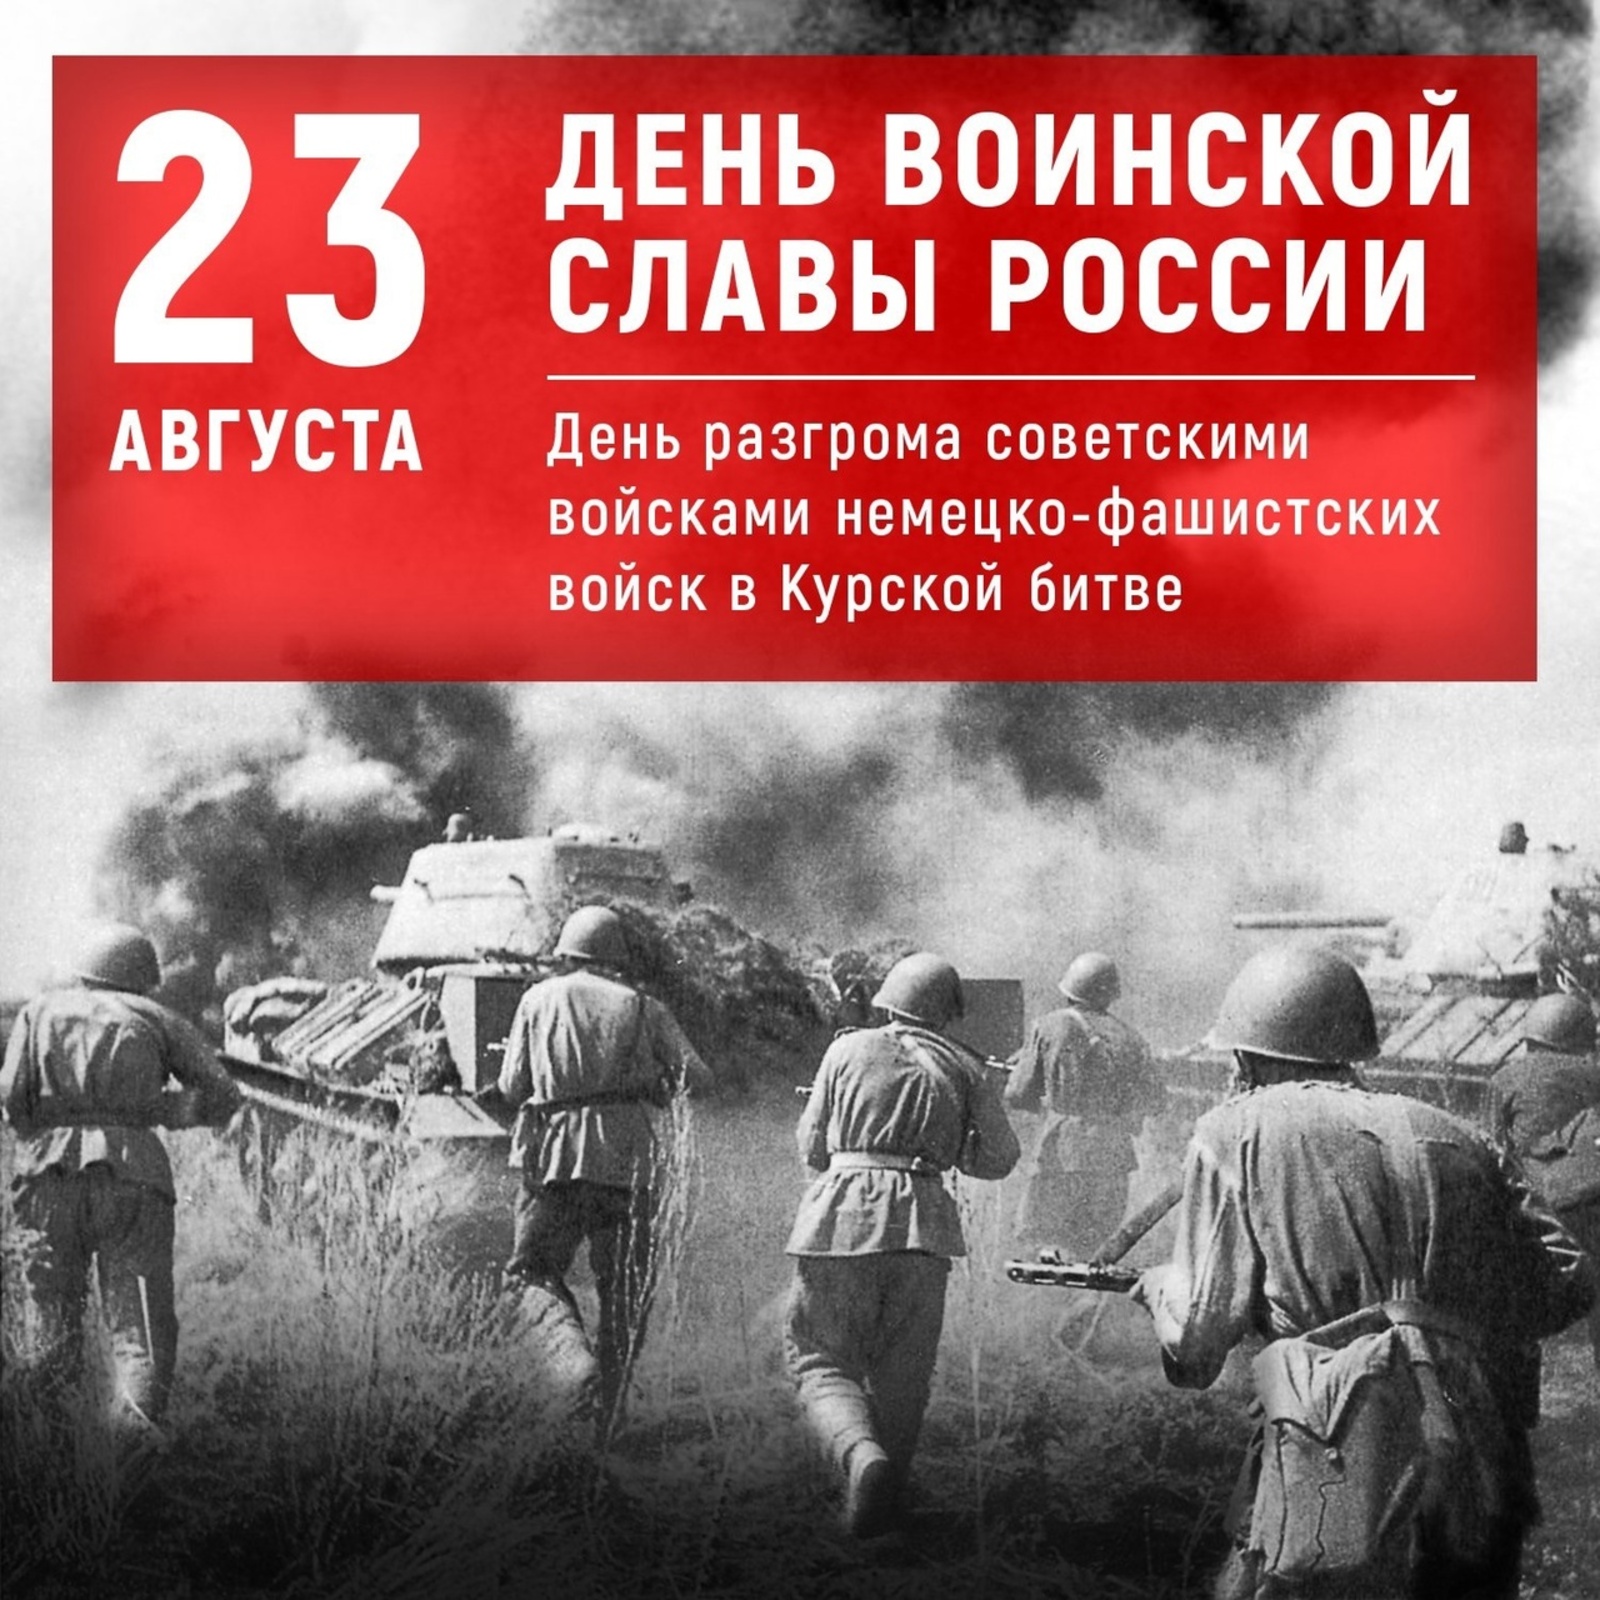 23 августа — 80-летие победы советских войск в Курской битве.